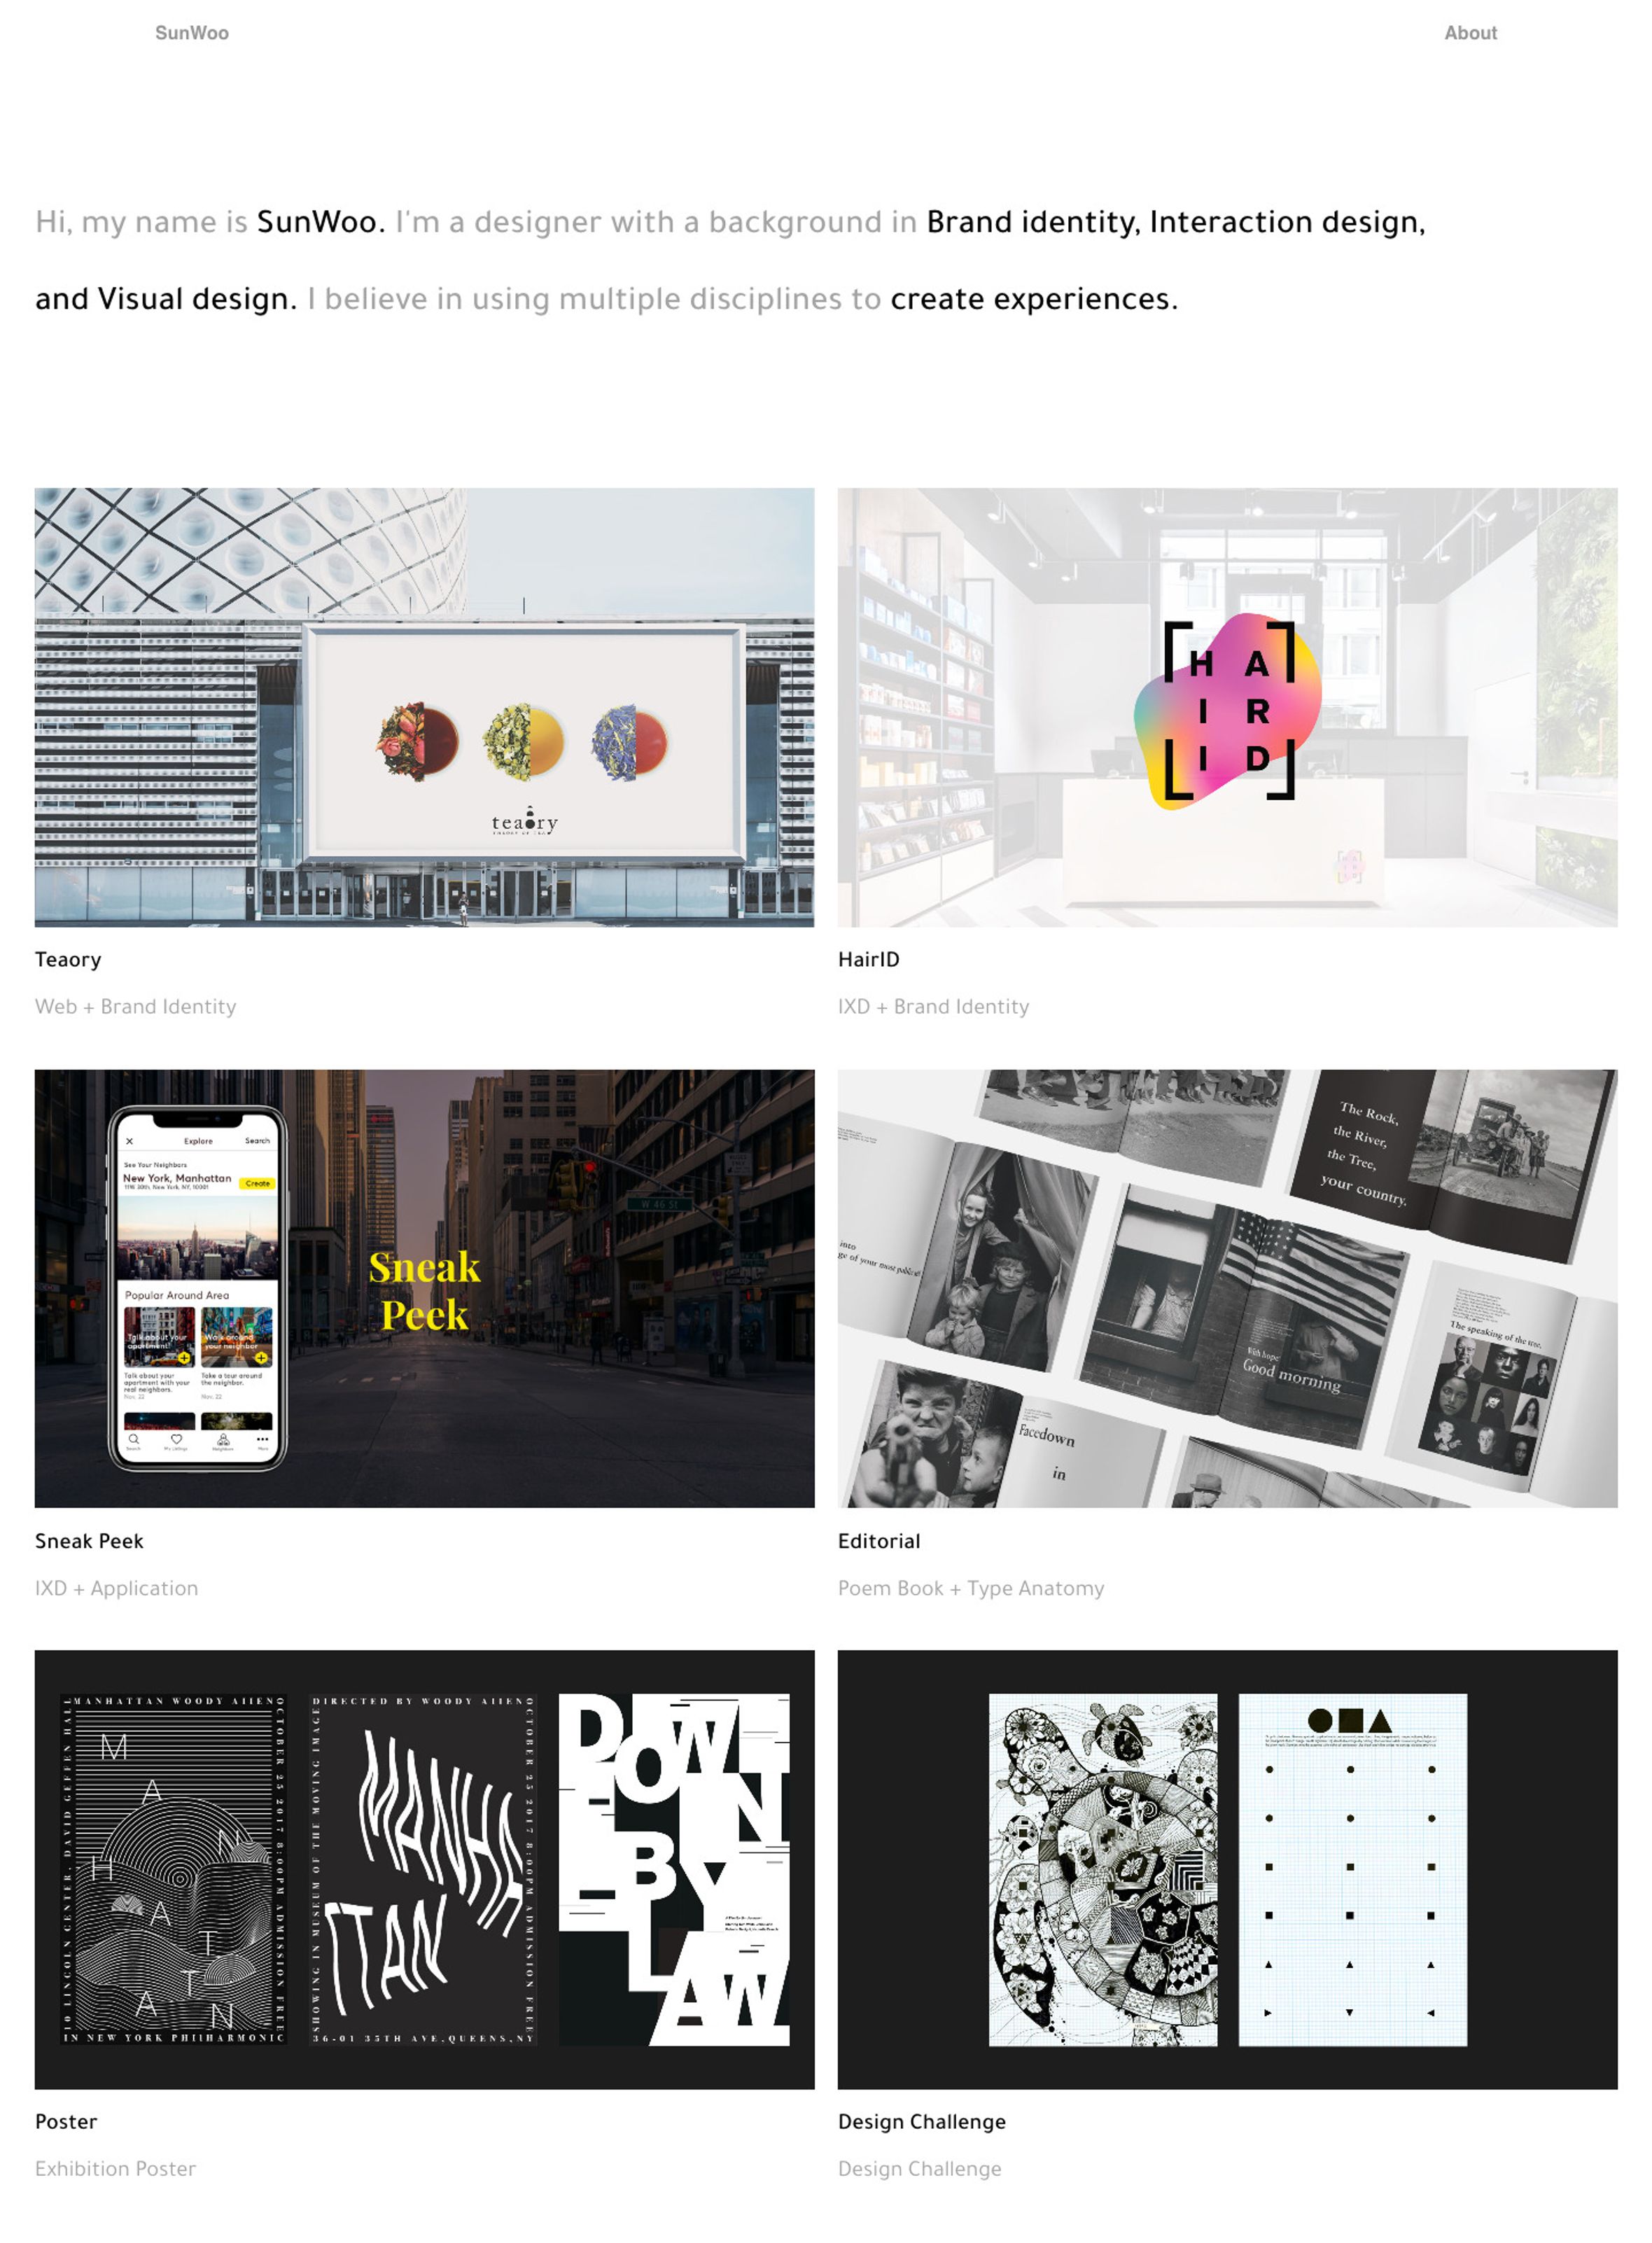 graphic design portfolio cases